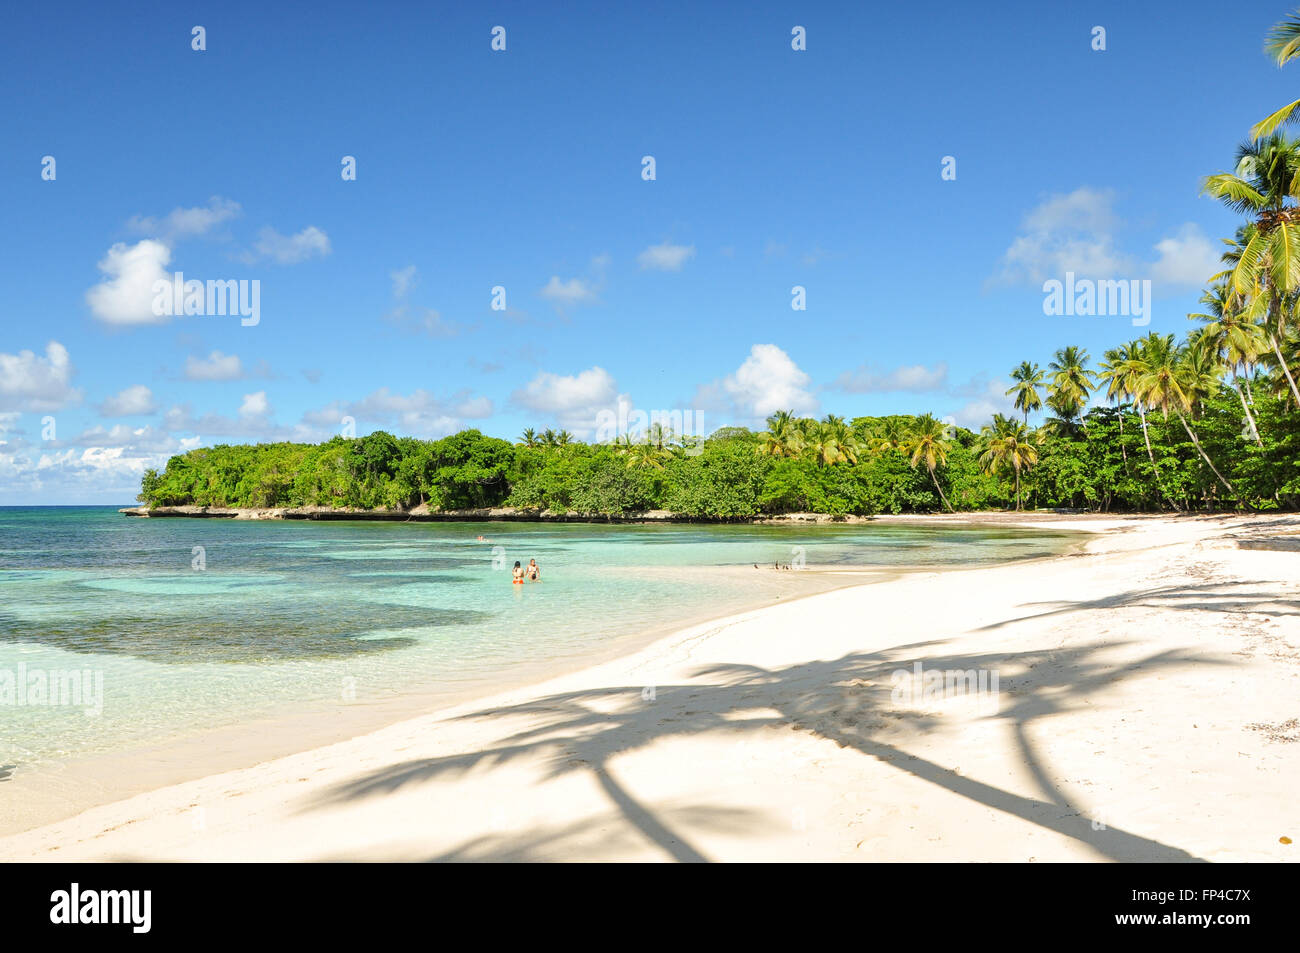 La Playita Las Galeras: A tropical beach in the Dominican Republic Stock Photo